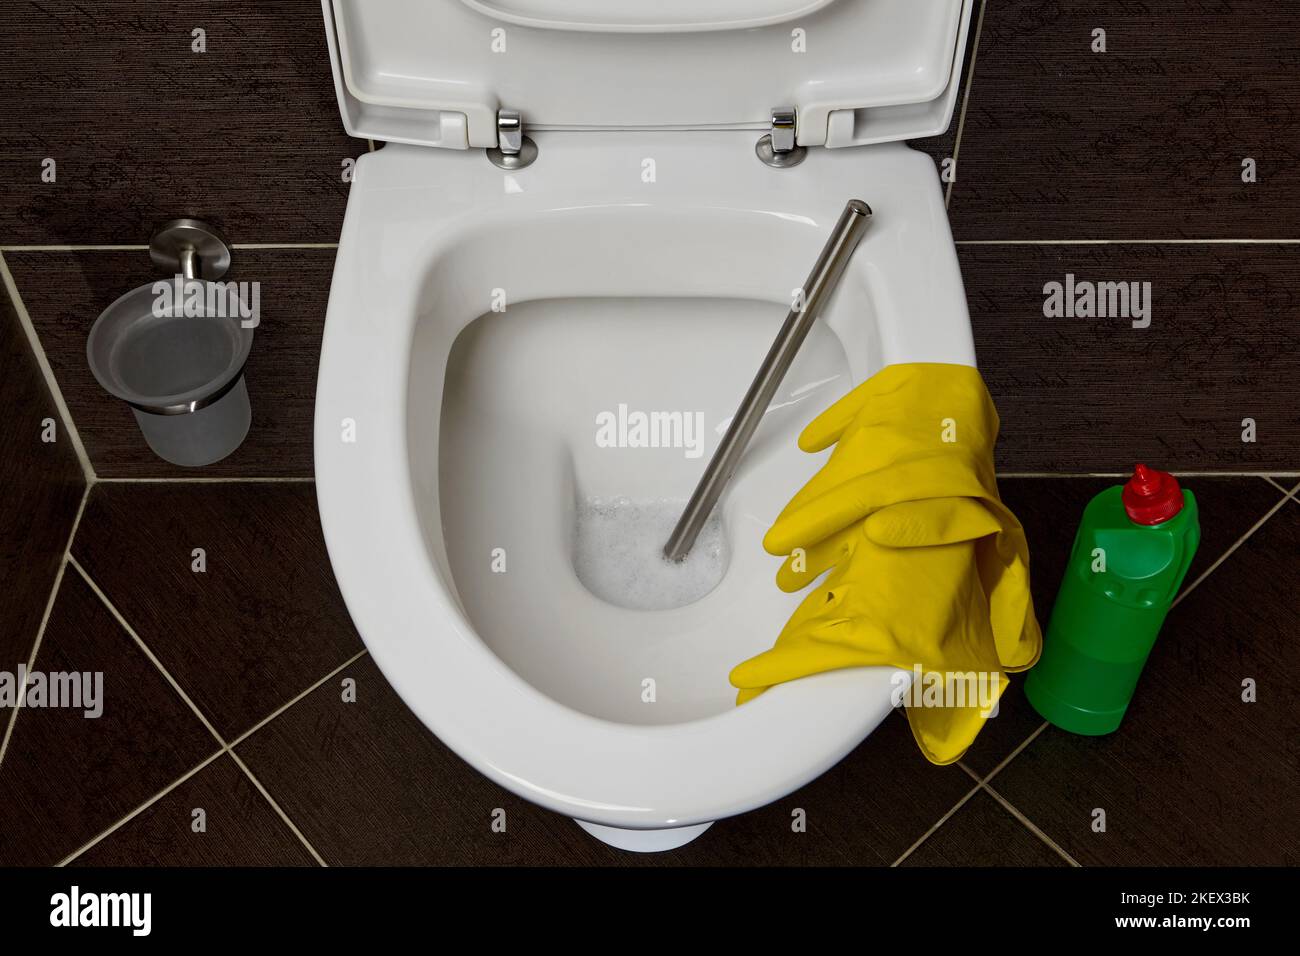 Toilettenschüssel mit Toilettenbürste, gelben Gummihandschuhen und einem Reinigungs- und Desinfektionsmittel auf dem Hintergrund dunkler Keramikfliesen im Toilettenraum Stockfoto